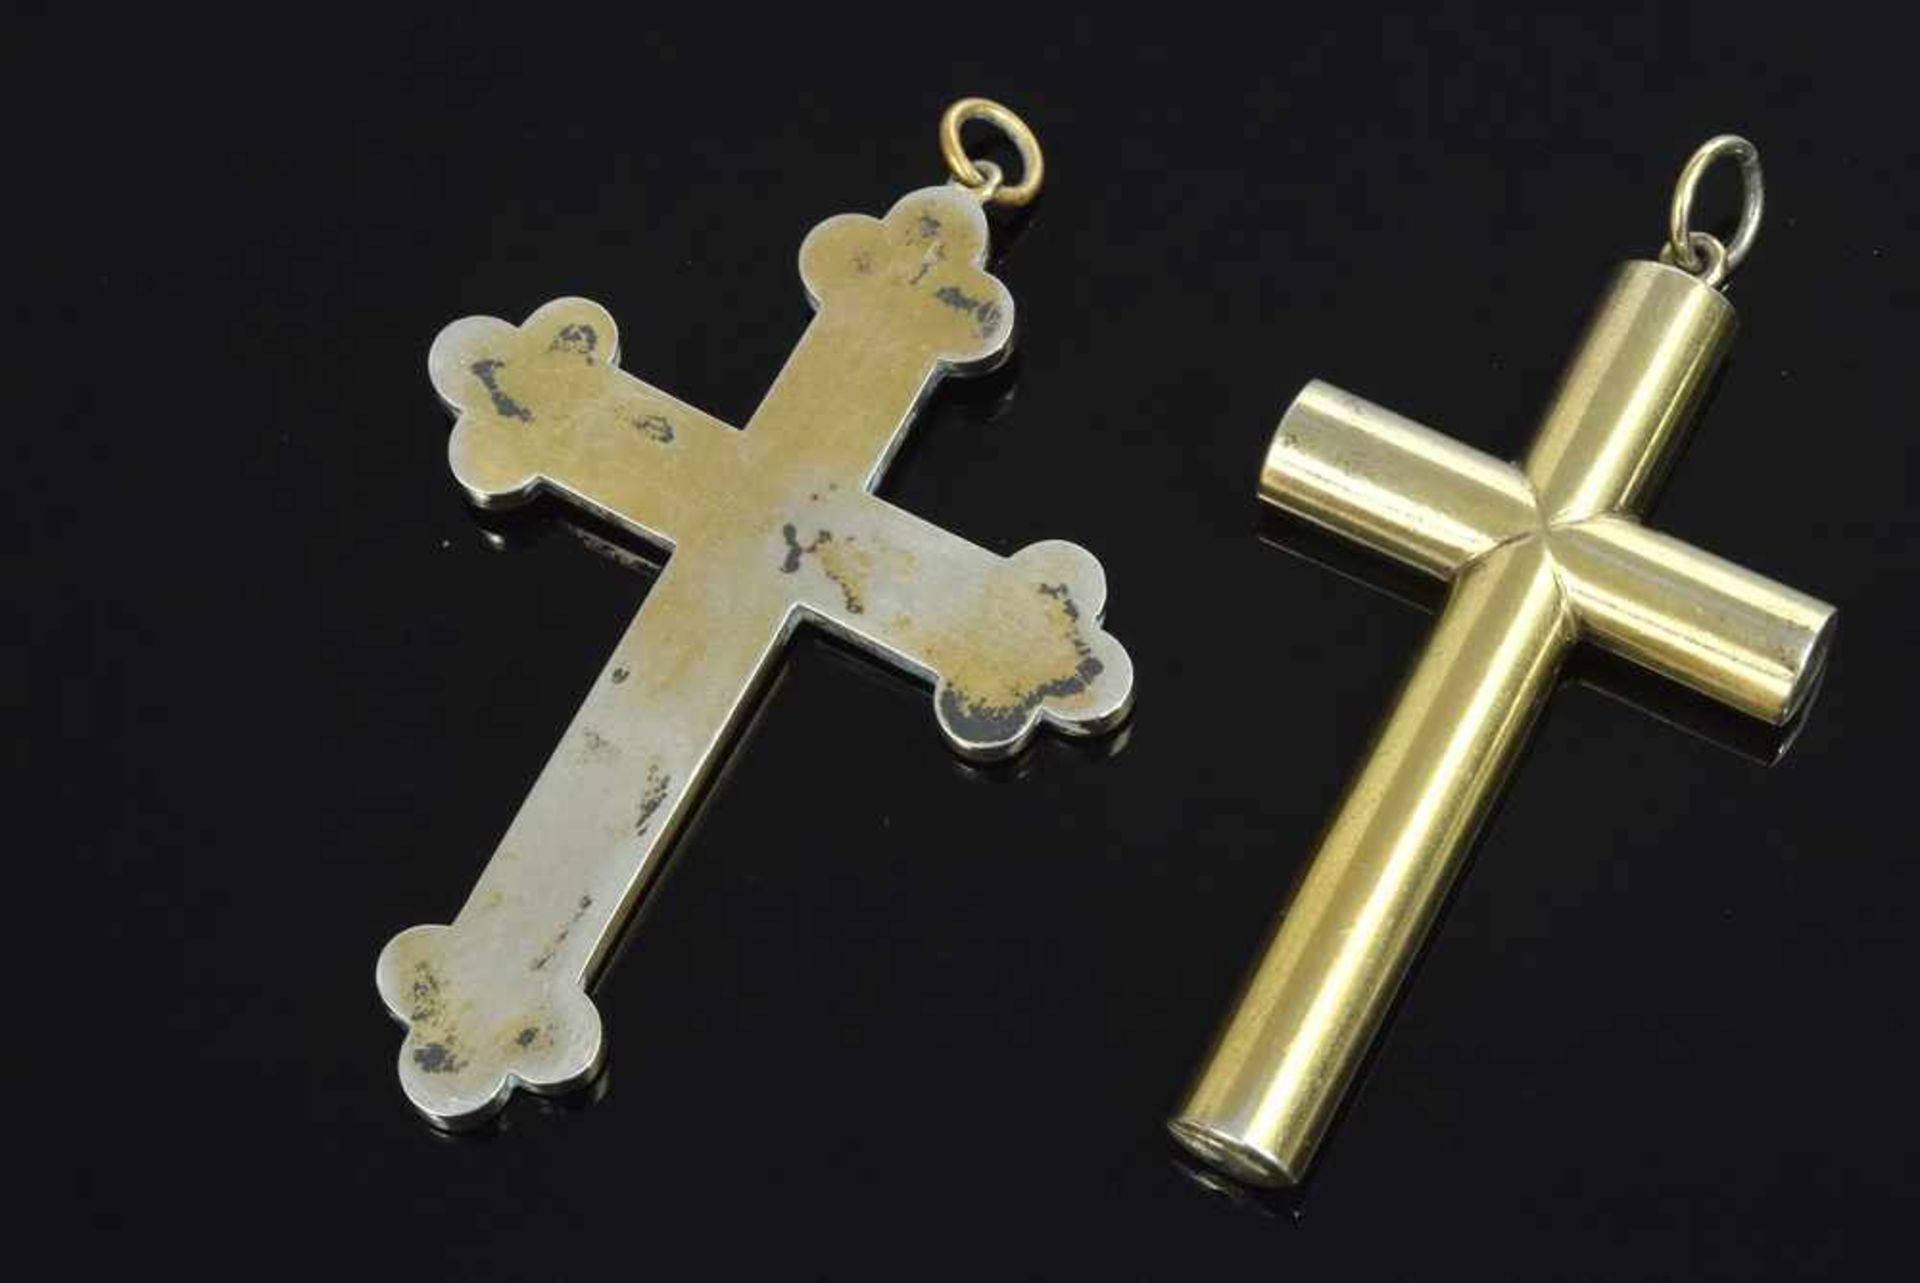 2 Diverse versilberte Kruzifix Anhänger mit Micromosaik und in schlichter Façon, Ende 19.Jh., H. 7cm - Image 2 of 2